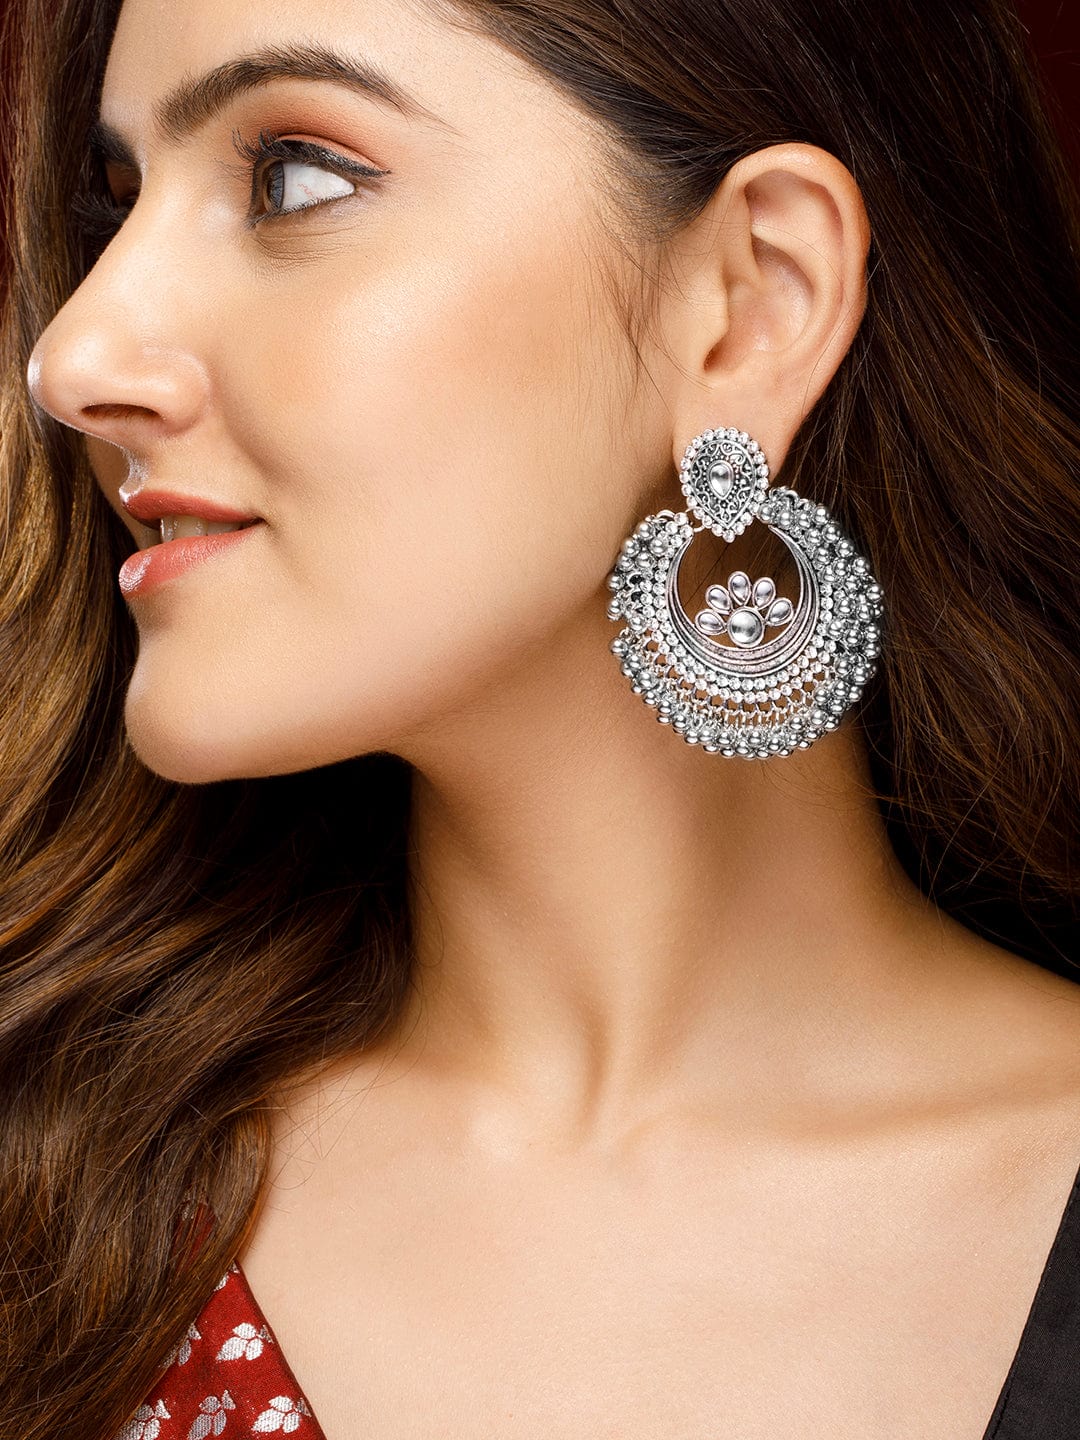 Rubans Silver-Toned Crescent Shaped Chandbalis Earrings Earrings